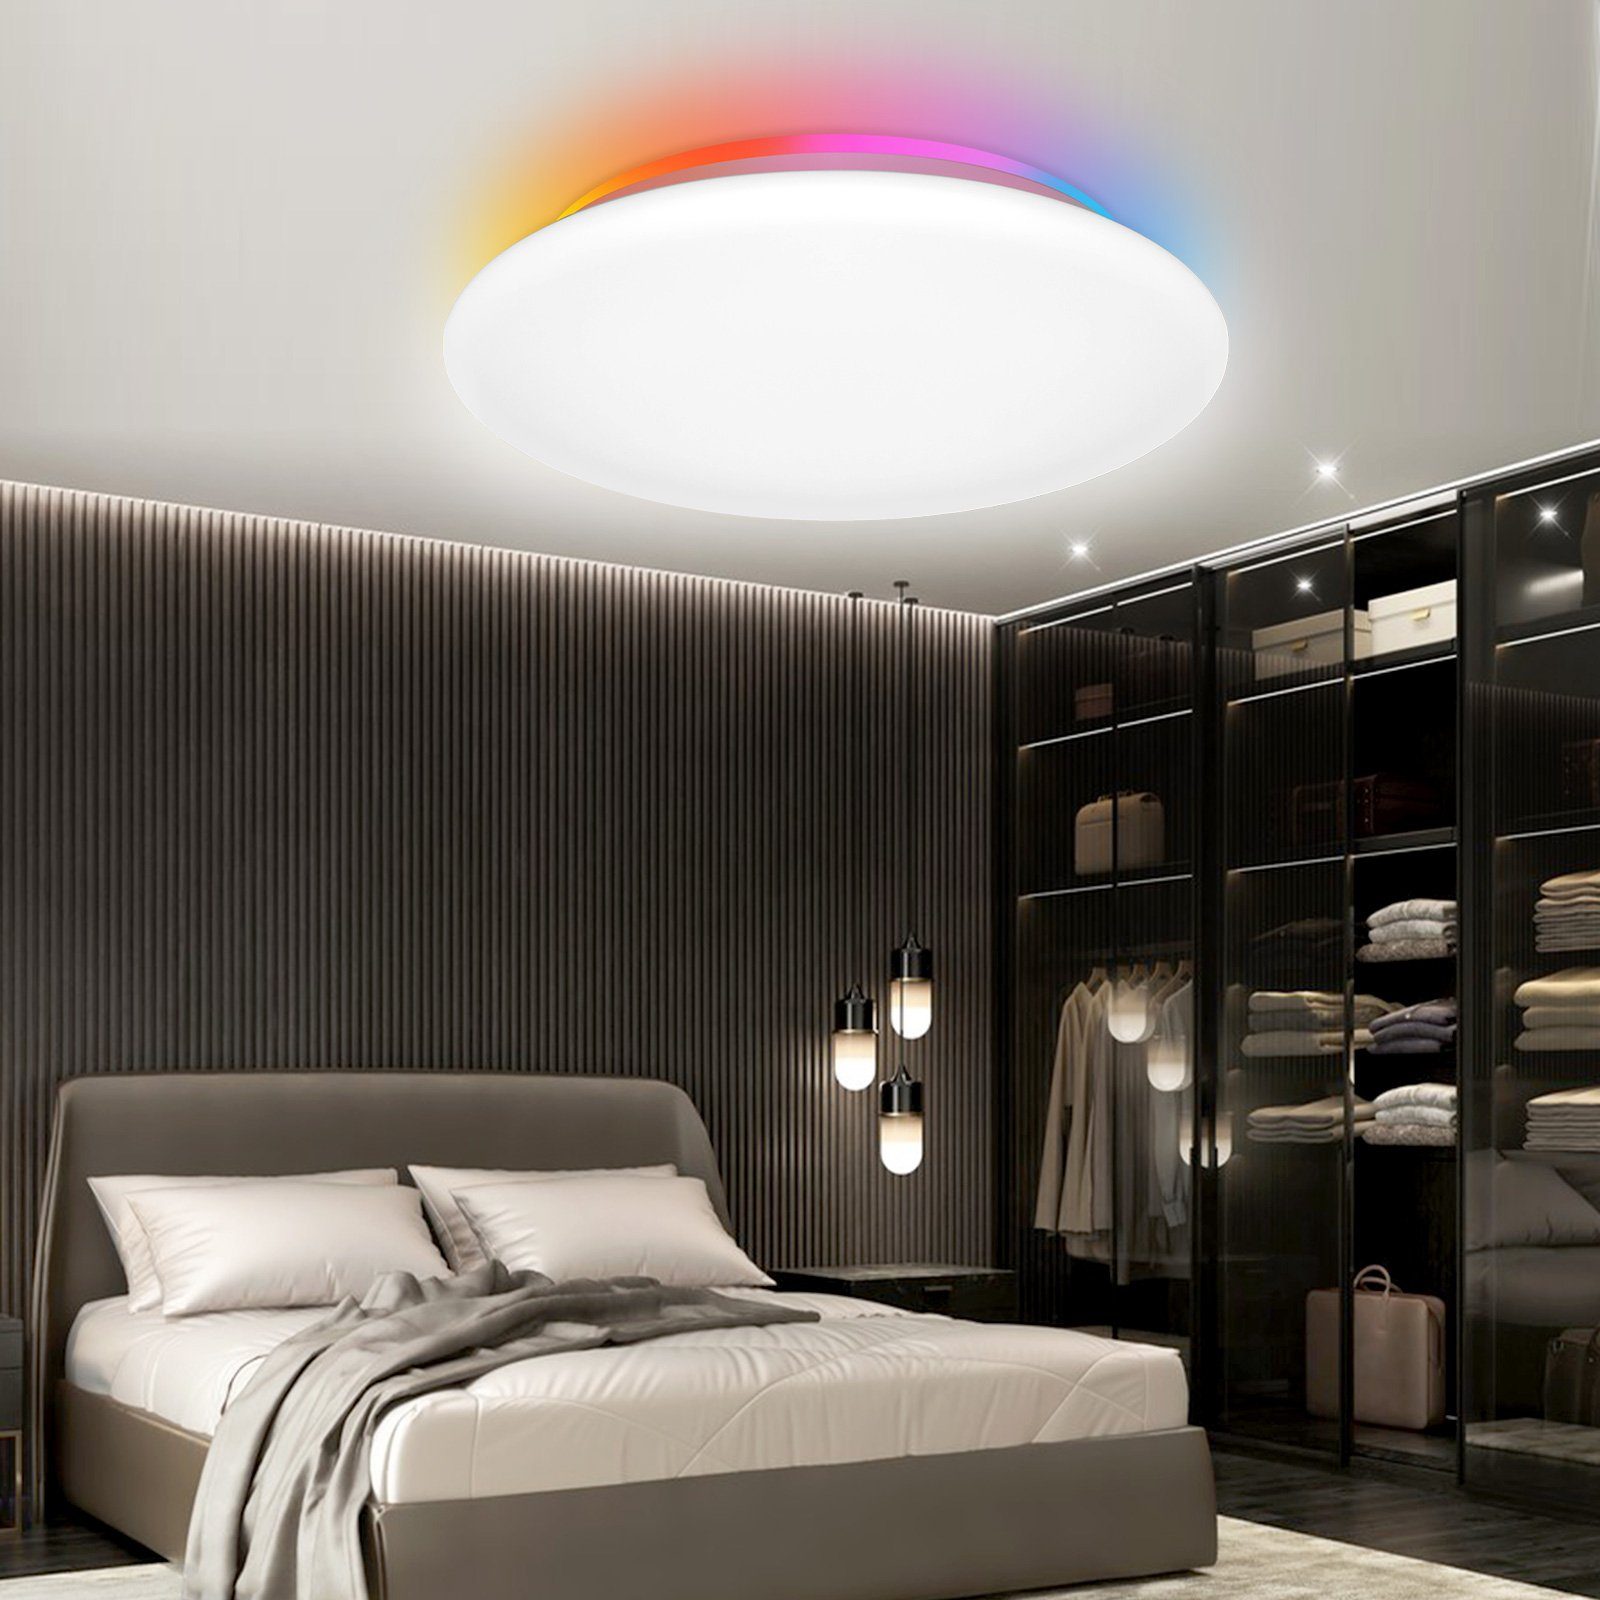 Rosnek LED Deckenleuchte Smart, Flush Mount, 28W, dimmbar, RGB, für Schlafzimmer Wohnzimmer, RGB-Vollfarbe (16 Millionen Arten der Farbeinstellung) + CCT-Farbtemperatur (2700K-6500K), Fernbedienung/Sprachsteuerung